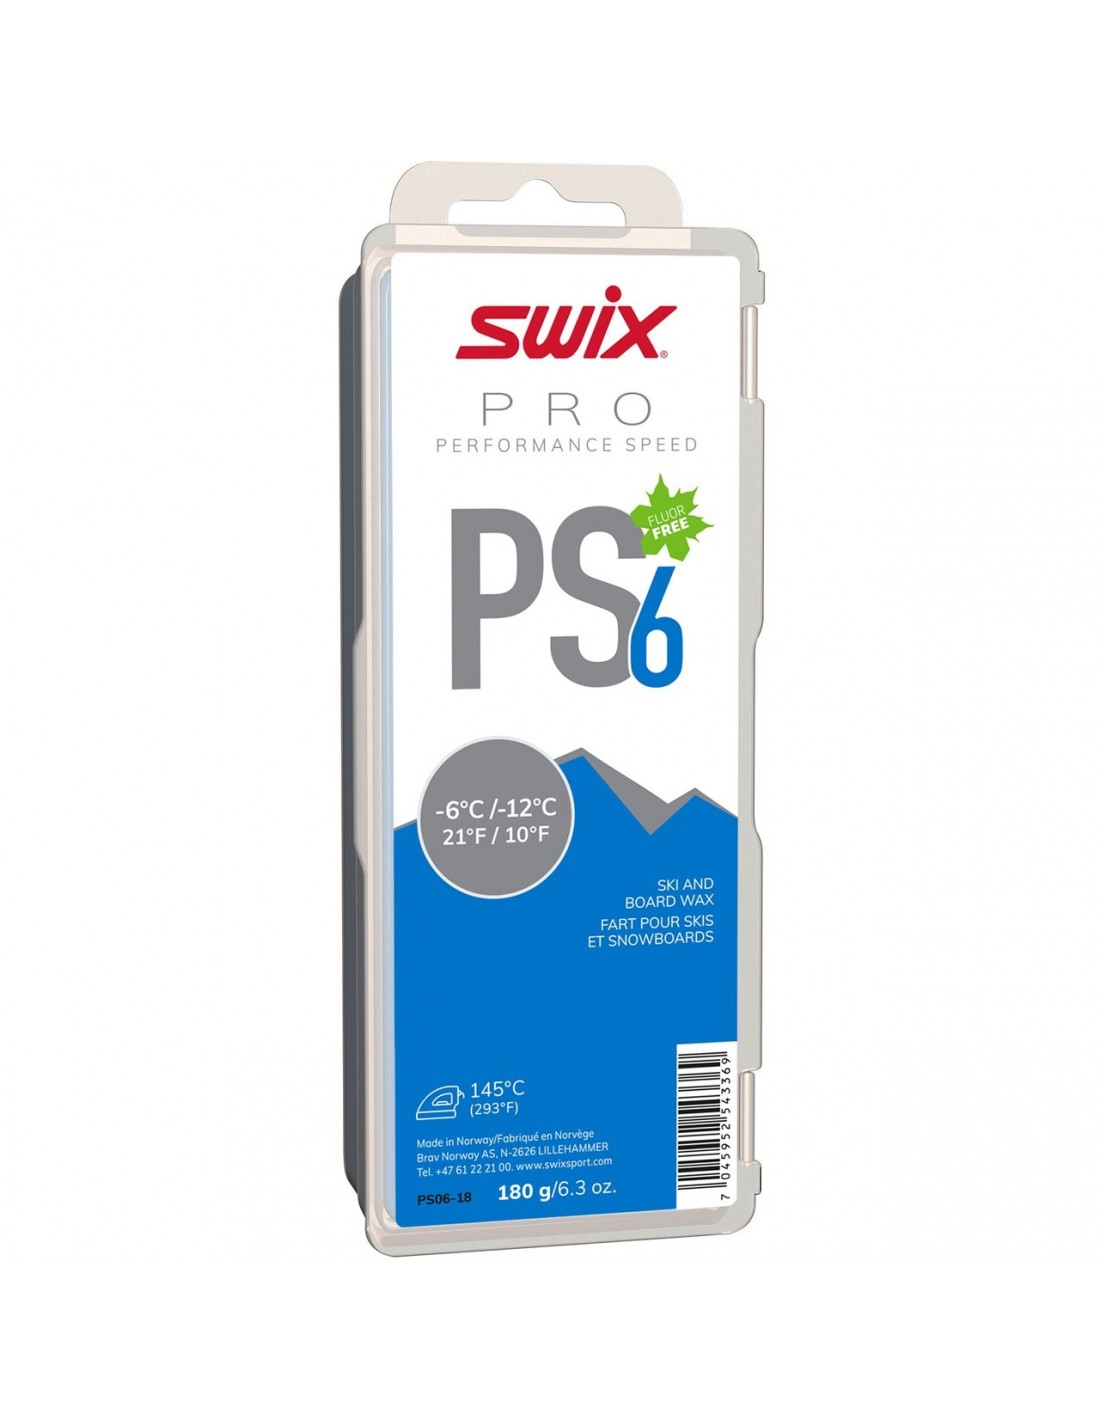 Swix Wachs - PS6 Performance Speed - Blau Wachsart - Blockwachs, Wachsfarbe - Blau, Wachsqualität - Grundwachs/Basiswachs, Einsatzbereich - Alpin, Wachs Swix - -6° bis -12°, von Swix